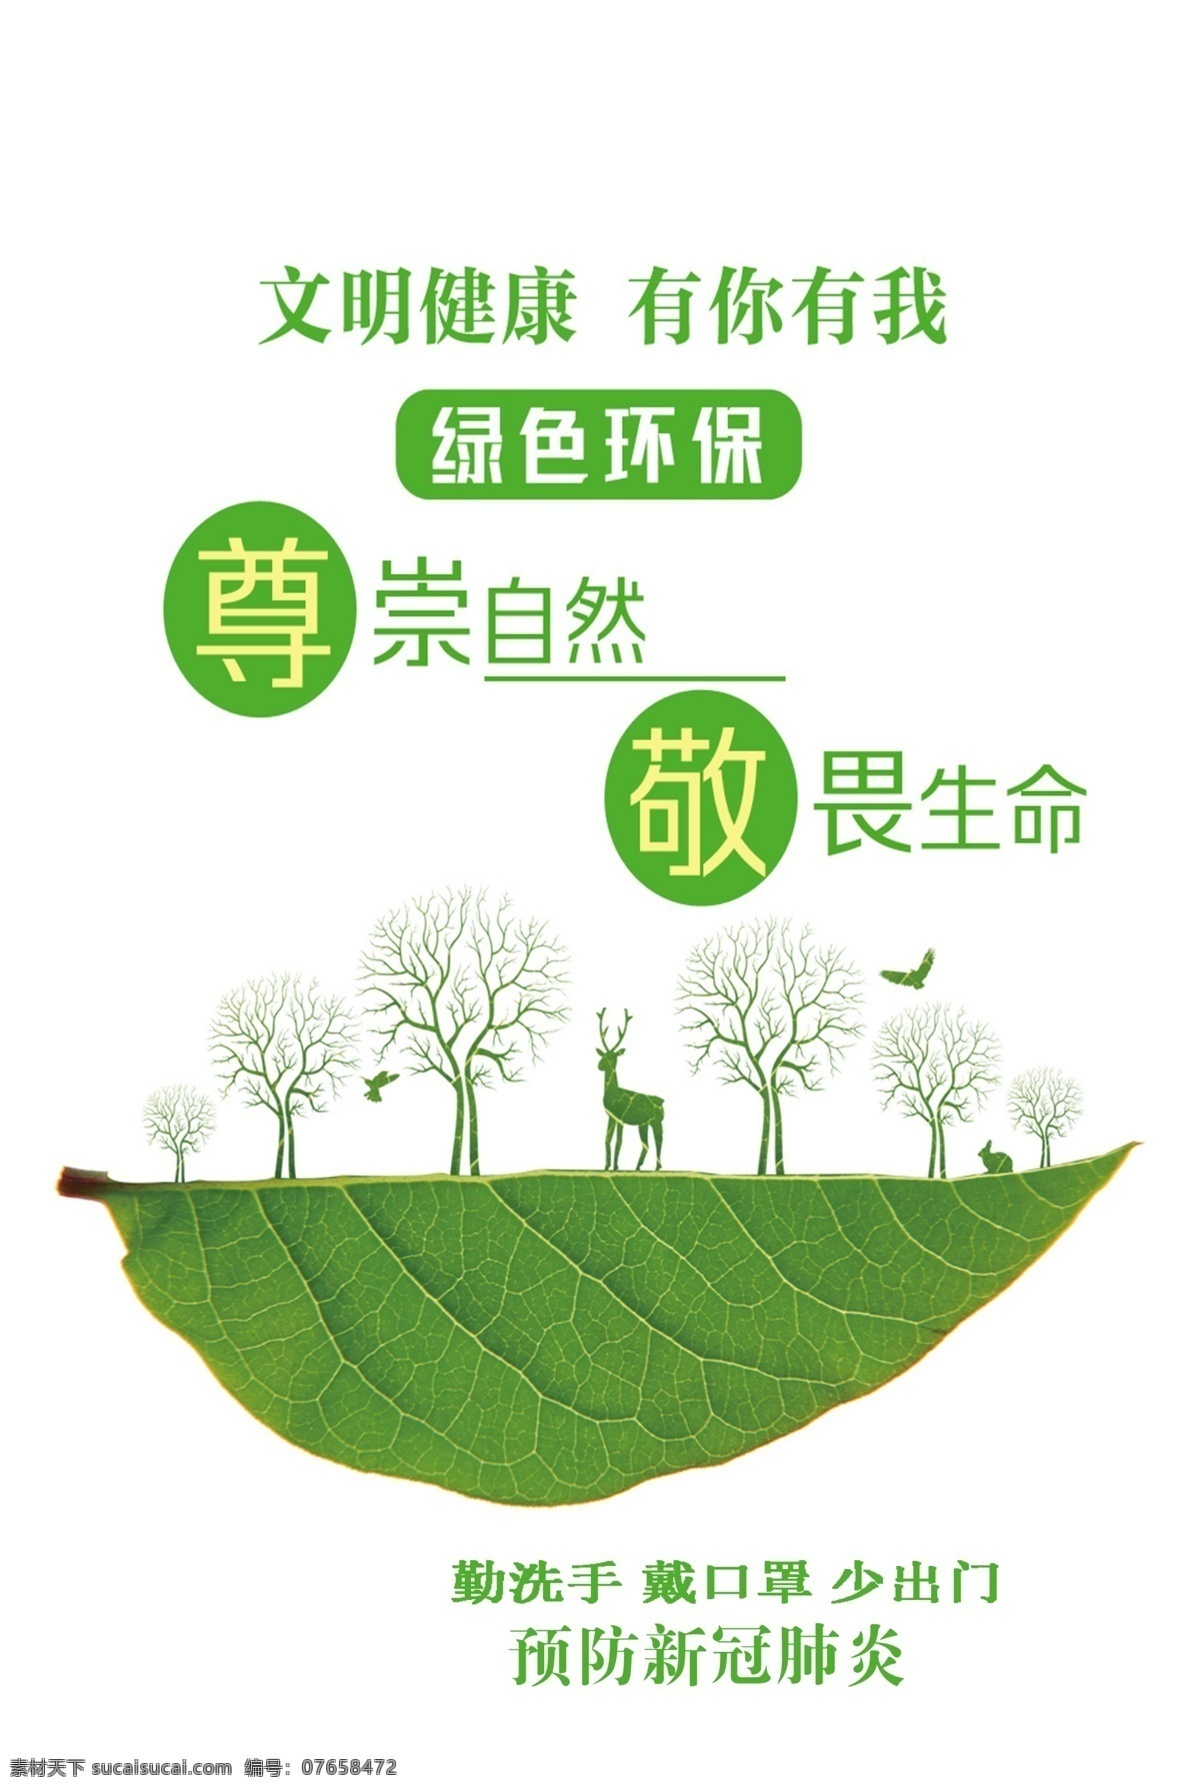 文明健康 有你有我 绿色环保 敬畏生命 尊崇自然 web 界面设计 中文模板